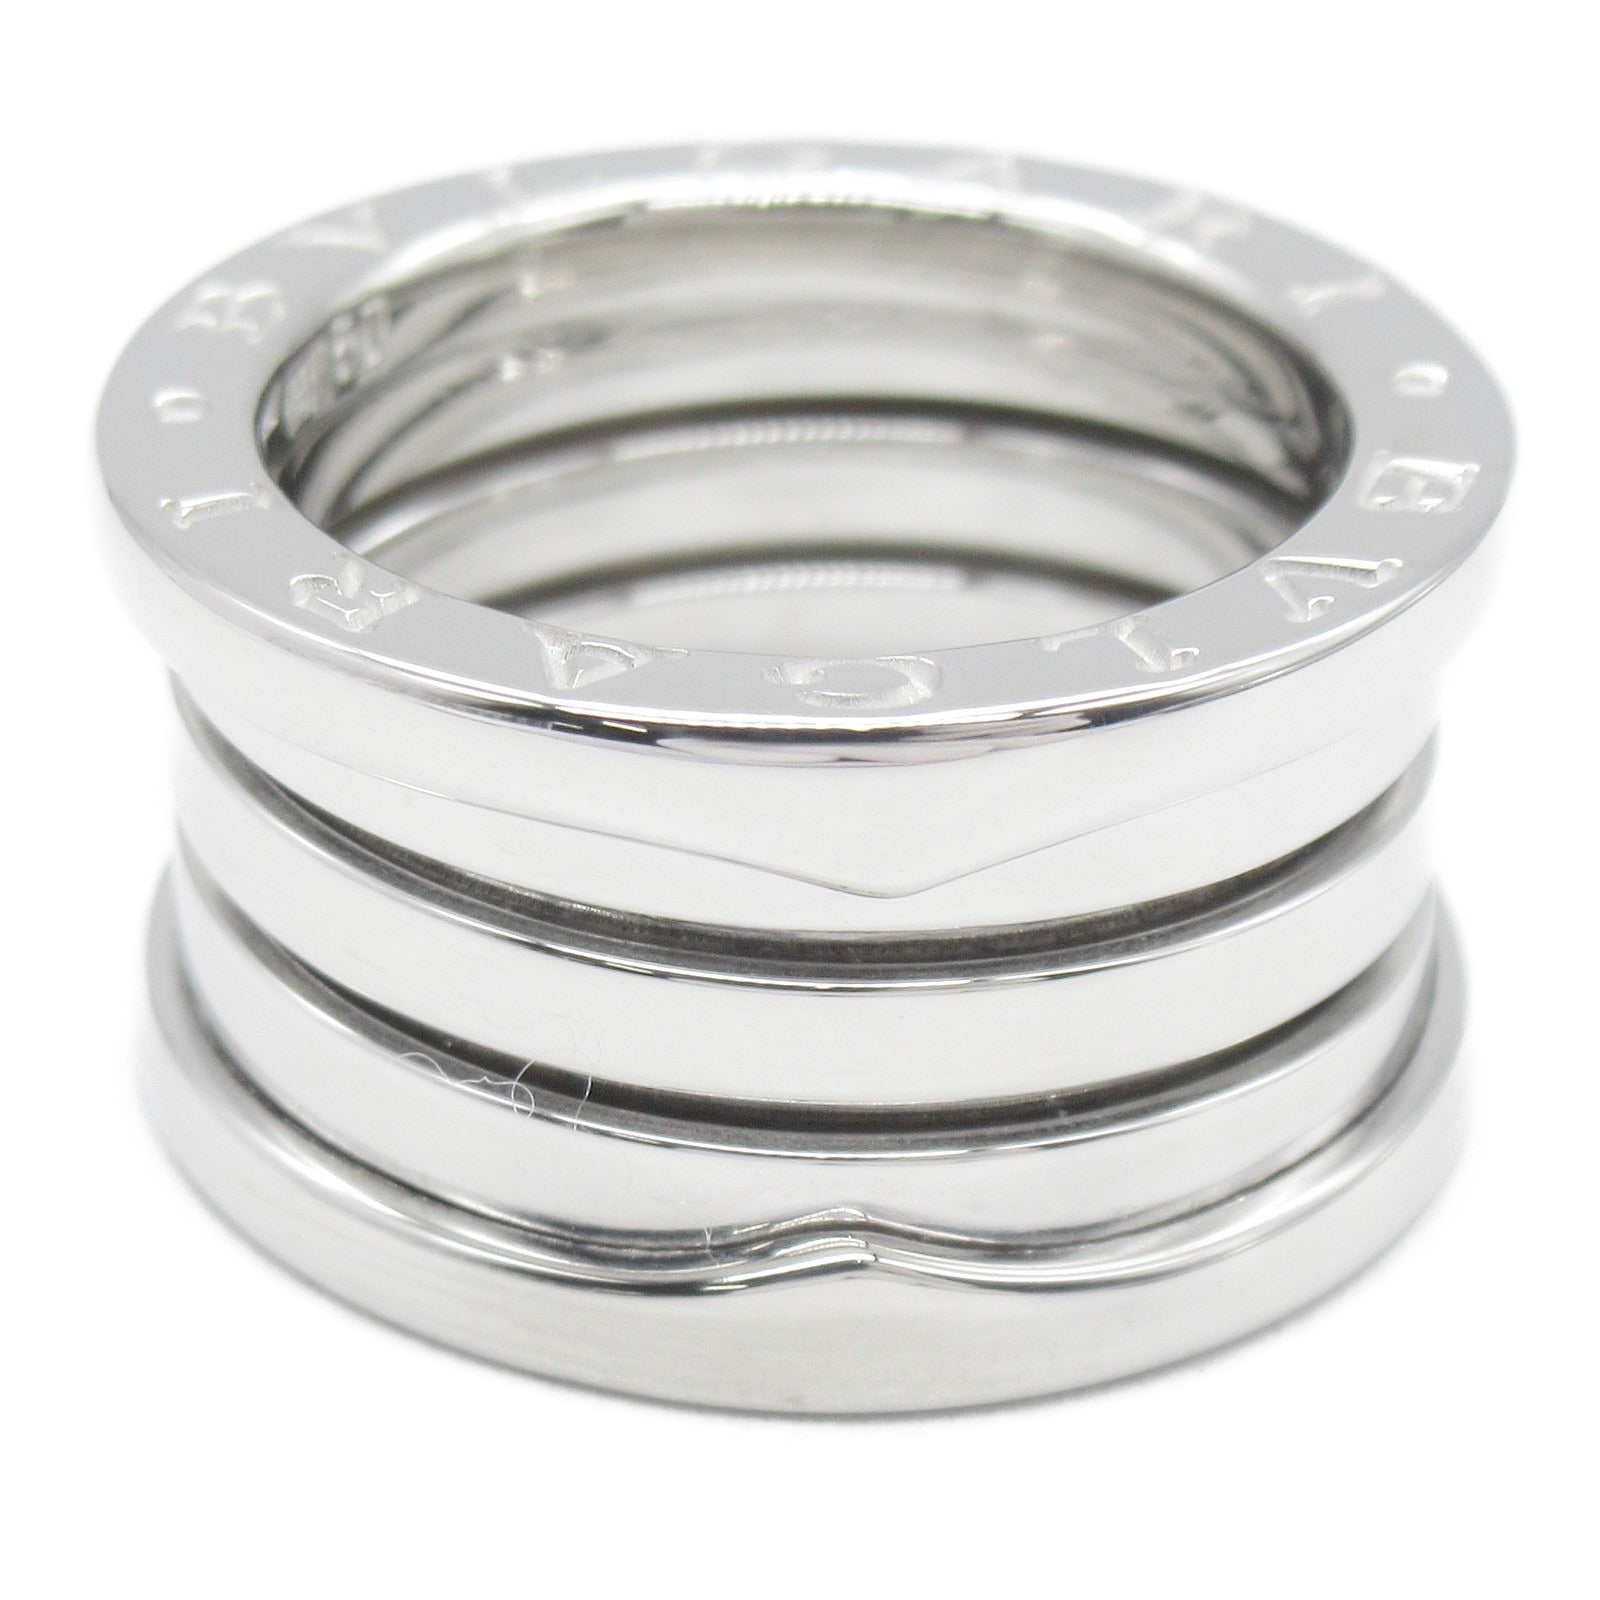 Bulgari BVLGARI B-zero1 Beezero One 4 Band Ring Ring Ring Ring Jewelry K18WG (White G)   Silver